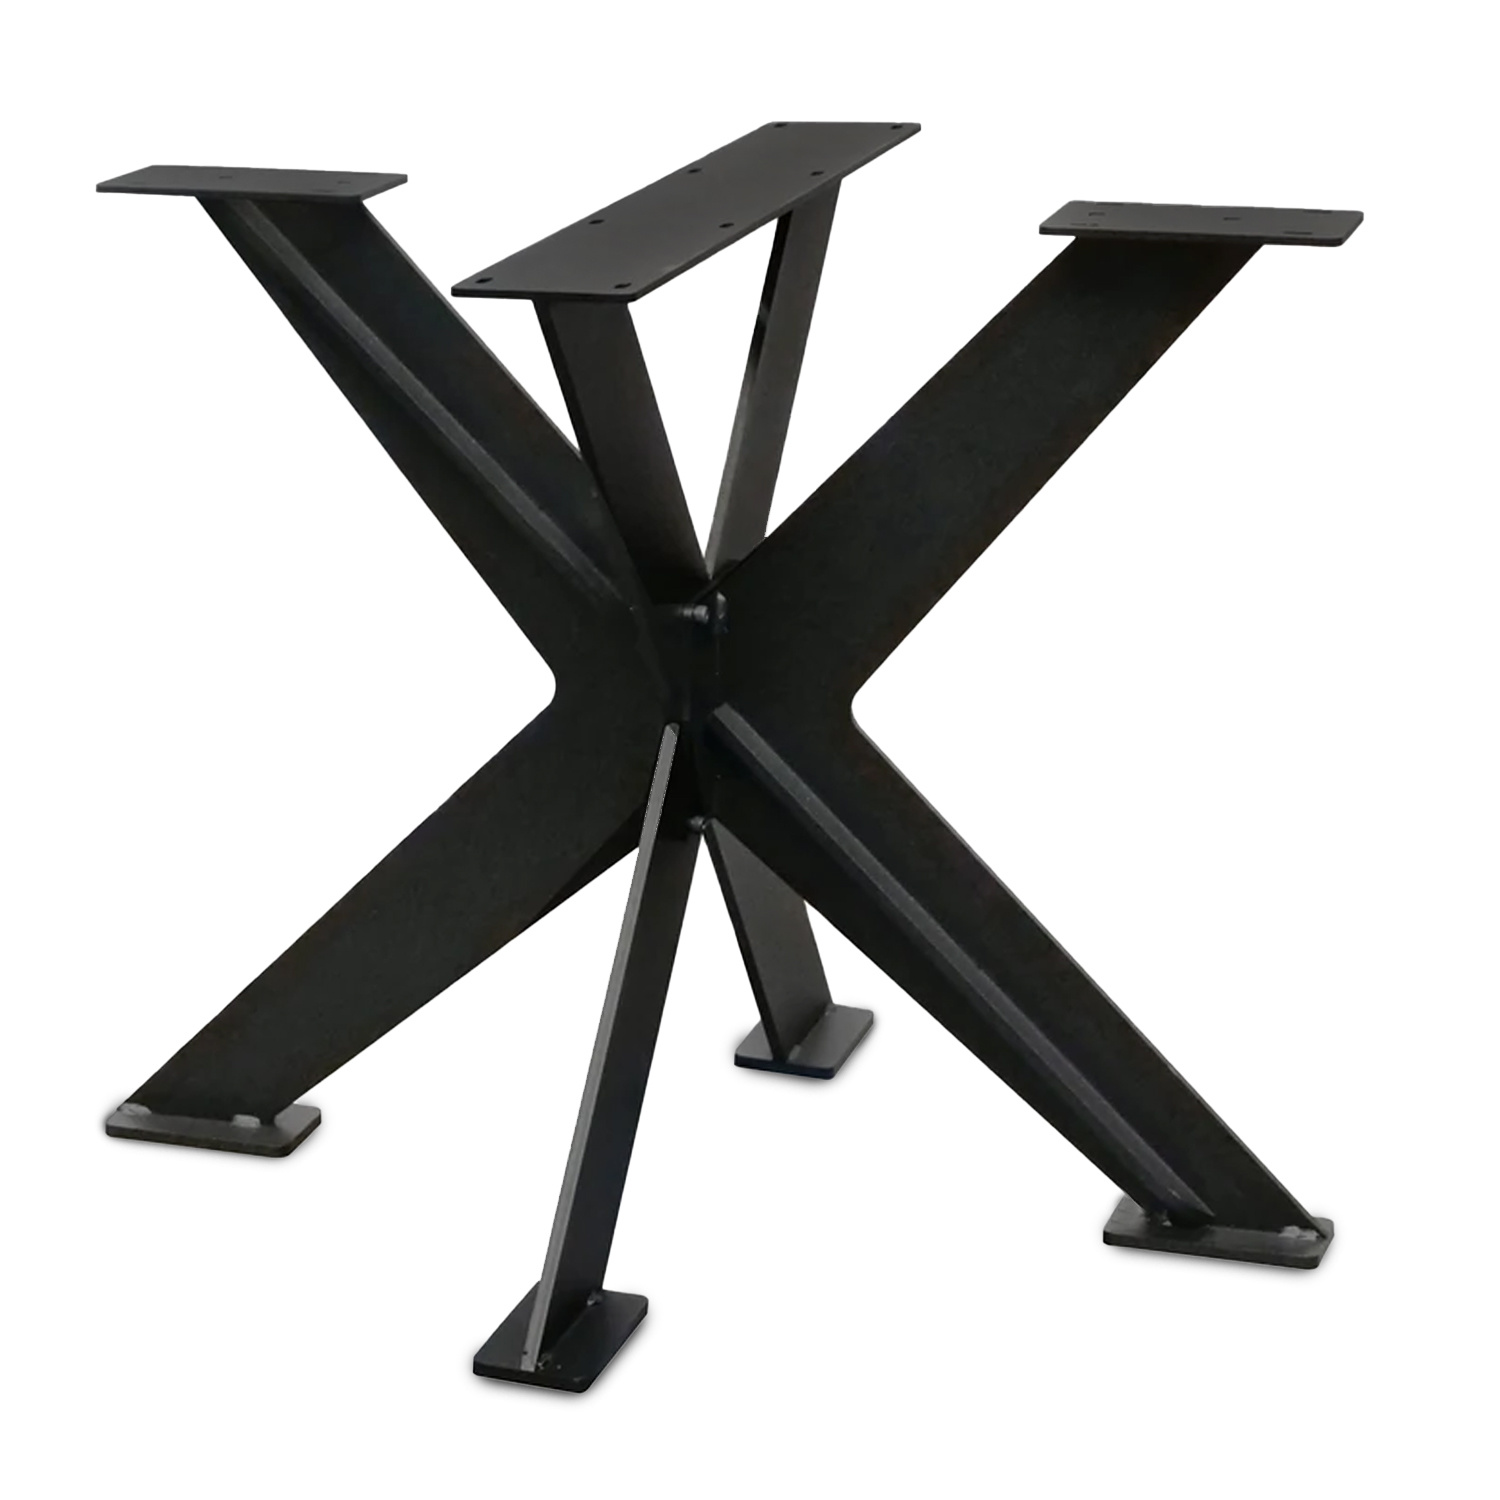  Tischgestell Metall doppelt X Massiv - 3-Teilig -1 cm dicker massiver Stahl - 80x80 cm - 72 cm hoch - Stahl Tischuntergestell  Beschichtet - Schwarz